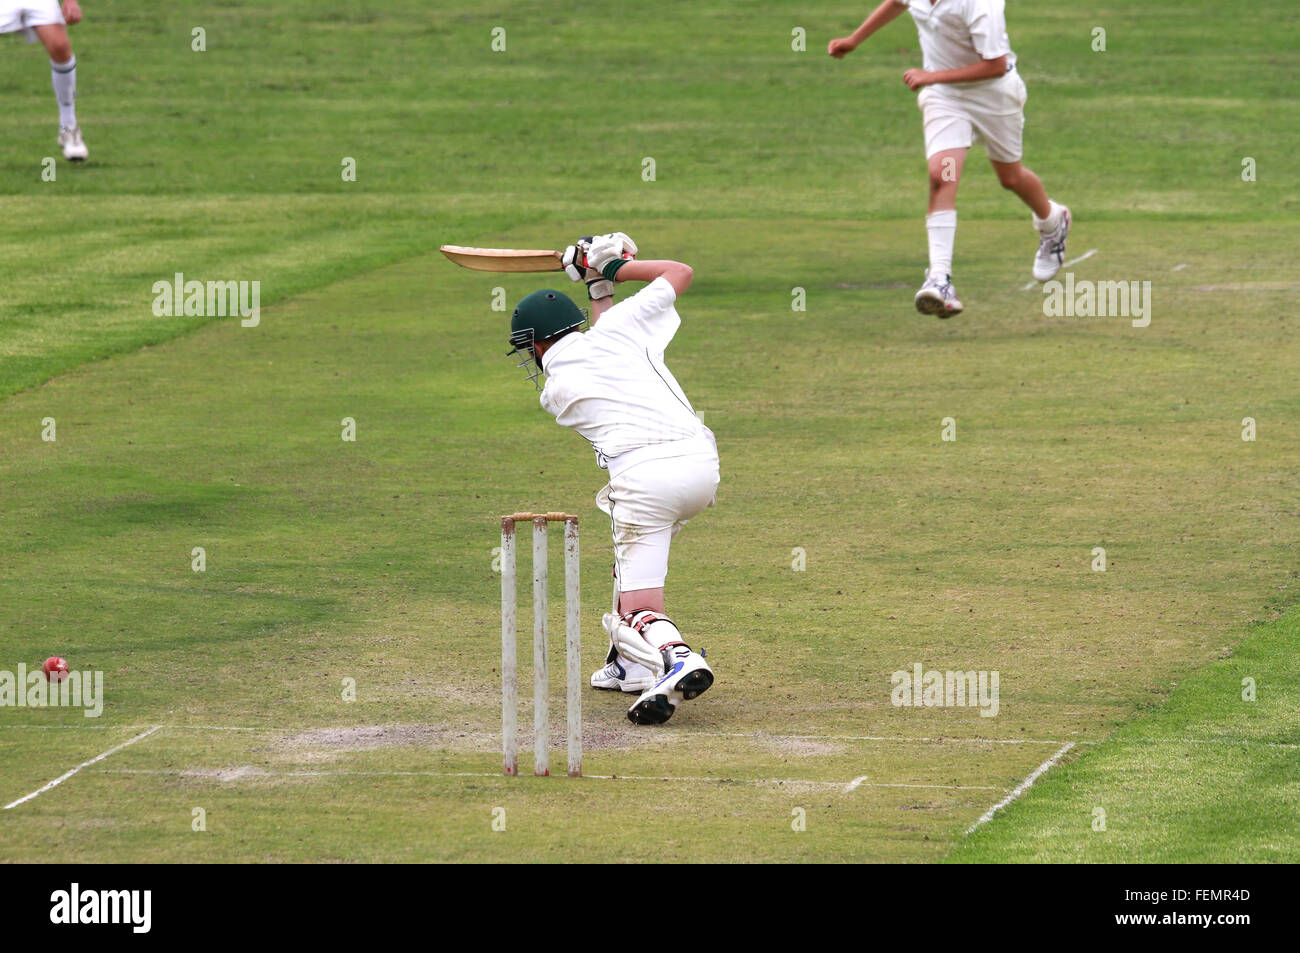 Un jeune joueur de cricket ou jeune adolescent est au volant d'une balle de cricket à travers les couvertures. Banque D'Images